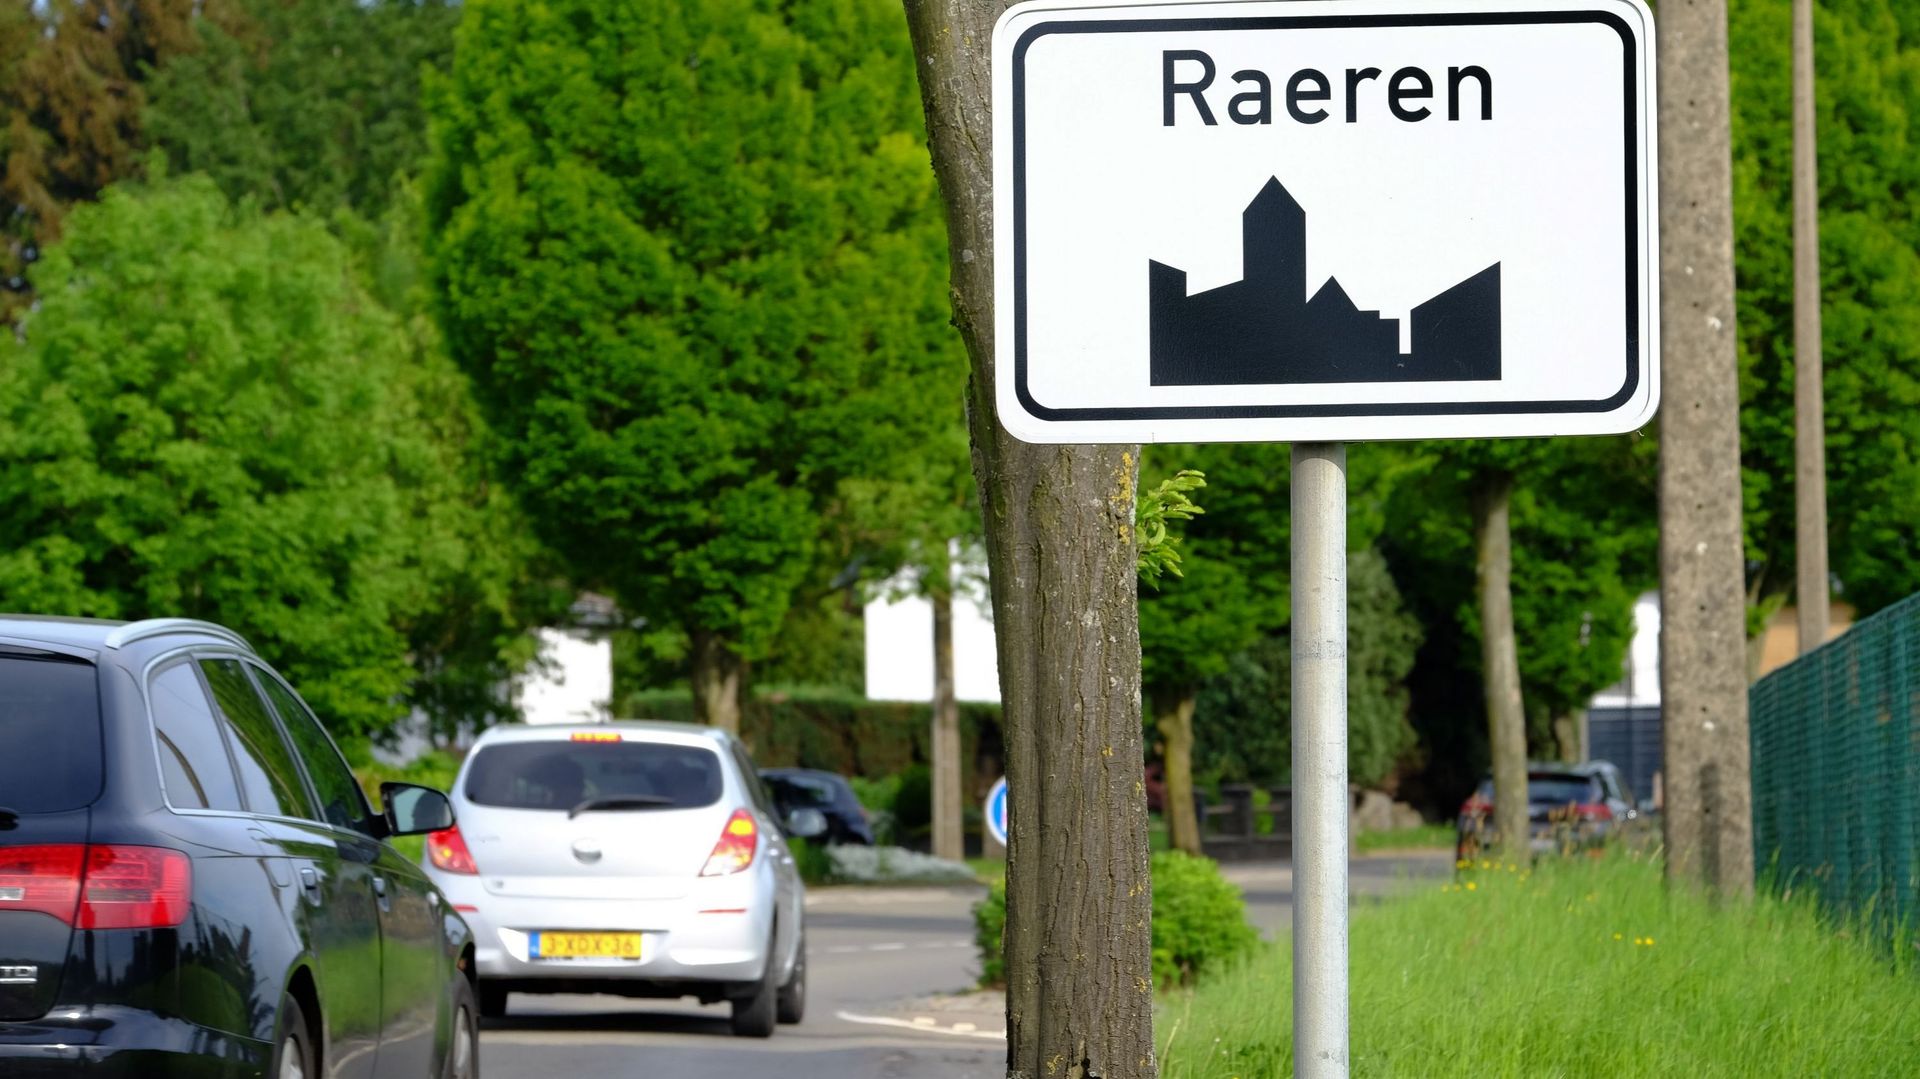 Le corps d’un néerlandais disparu en 2020, retrouvé à Raeren